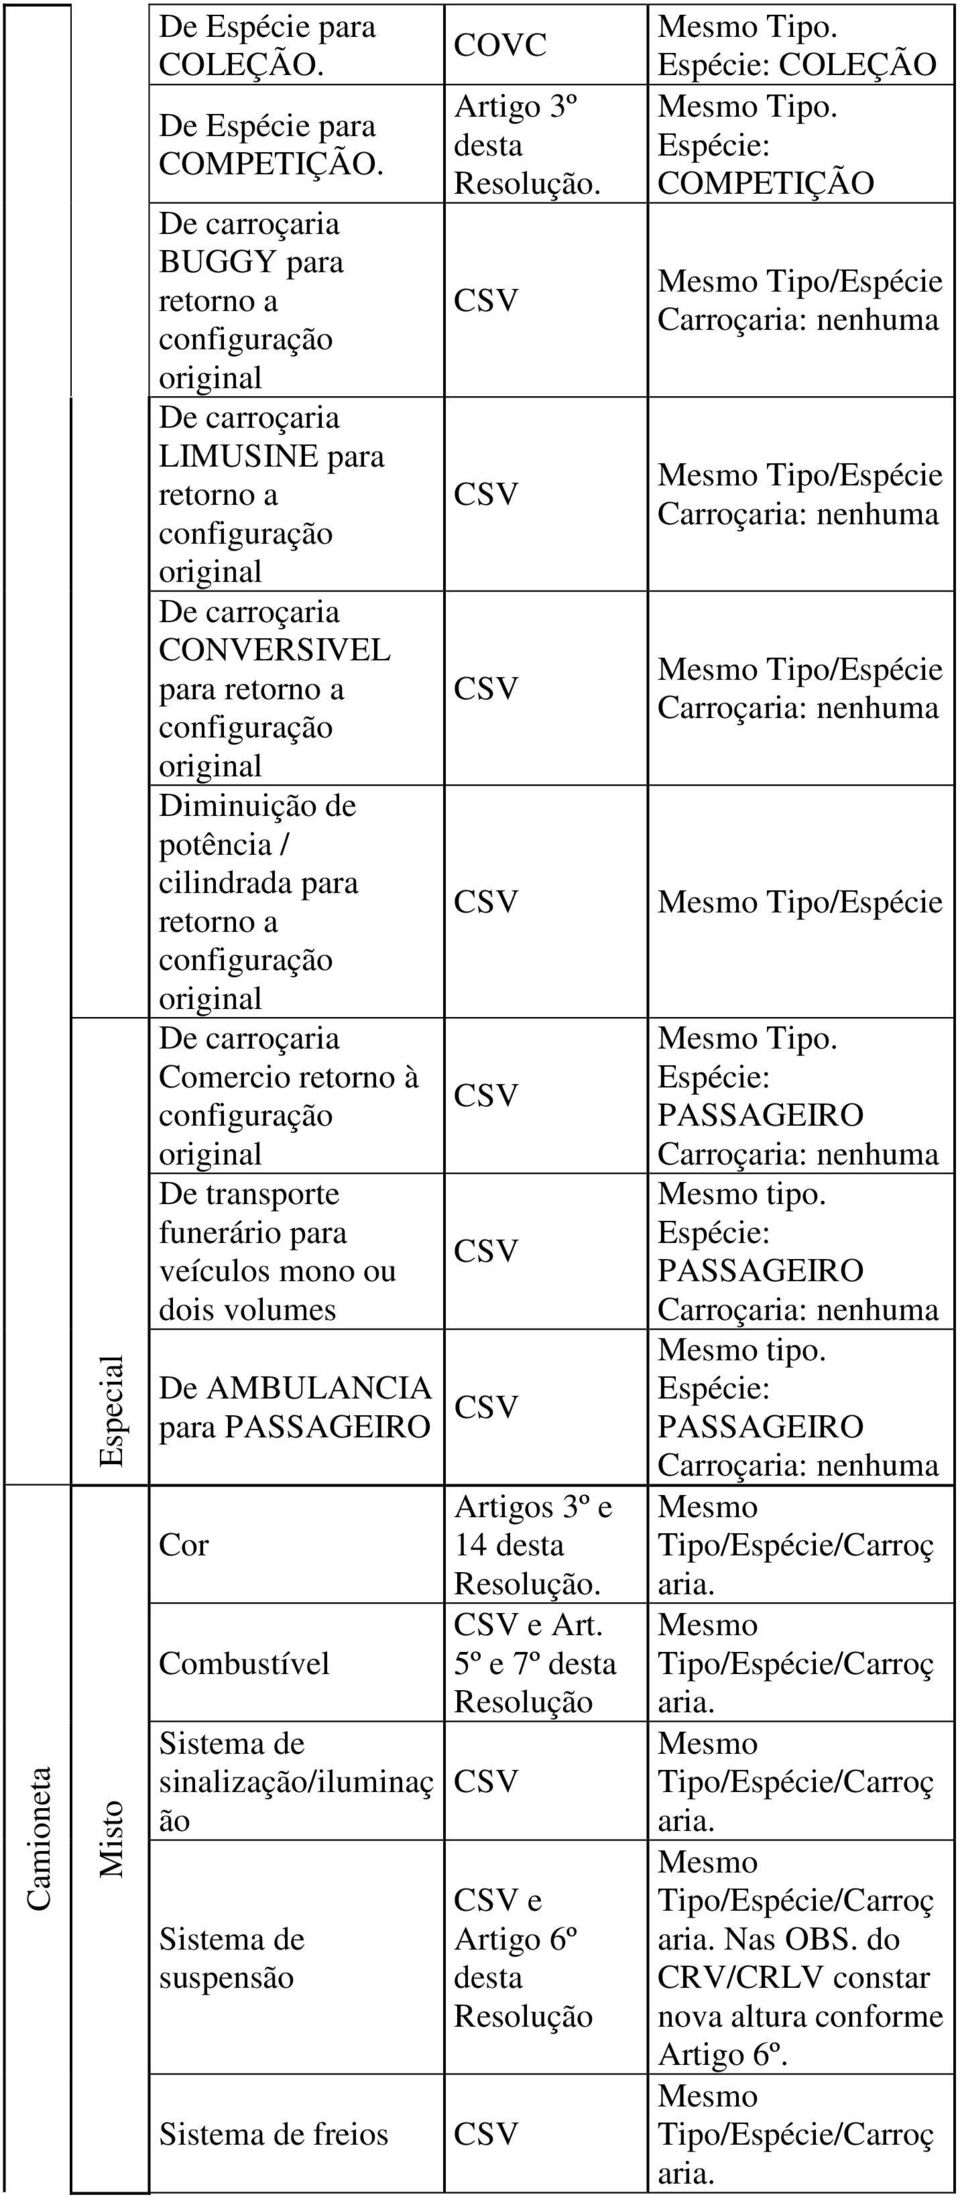 De Comercio De transporte funerário para veículos mono ou dois volumes De AMBULANCIA para PASSAGEIRO suspens freios 14 e Art.